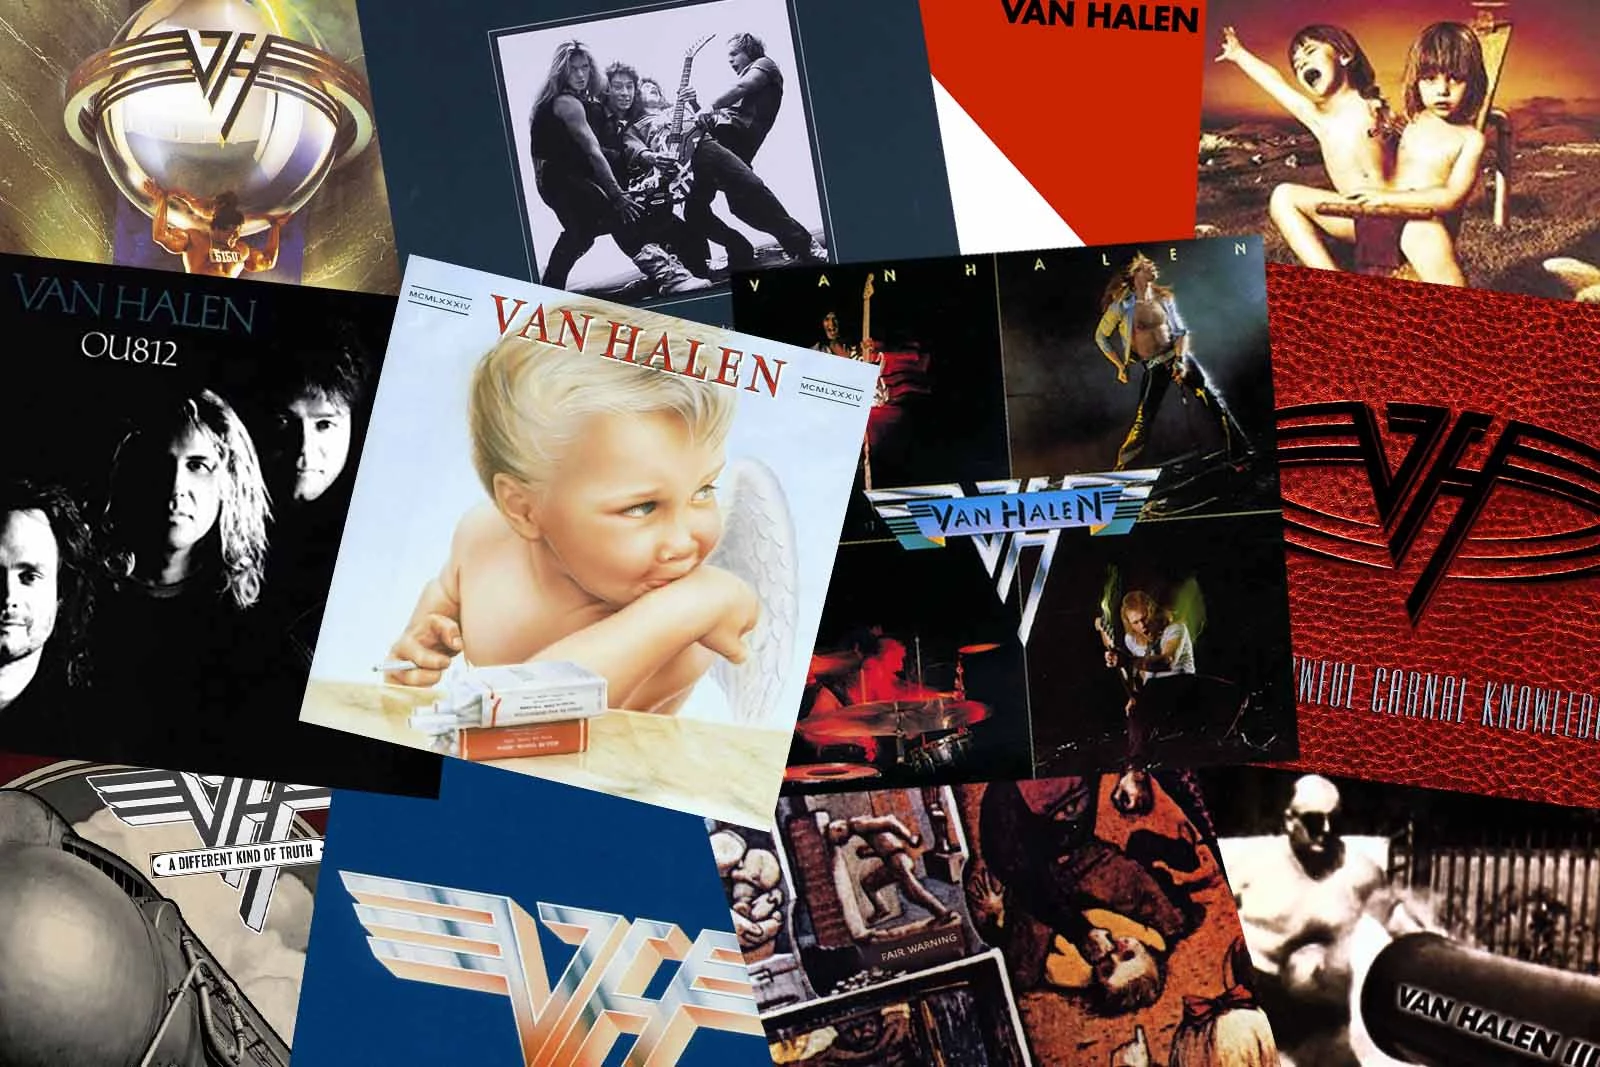  Van Halen: CDs y Vinilo